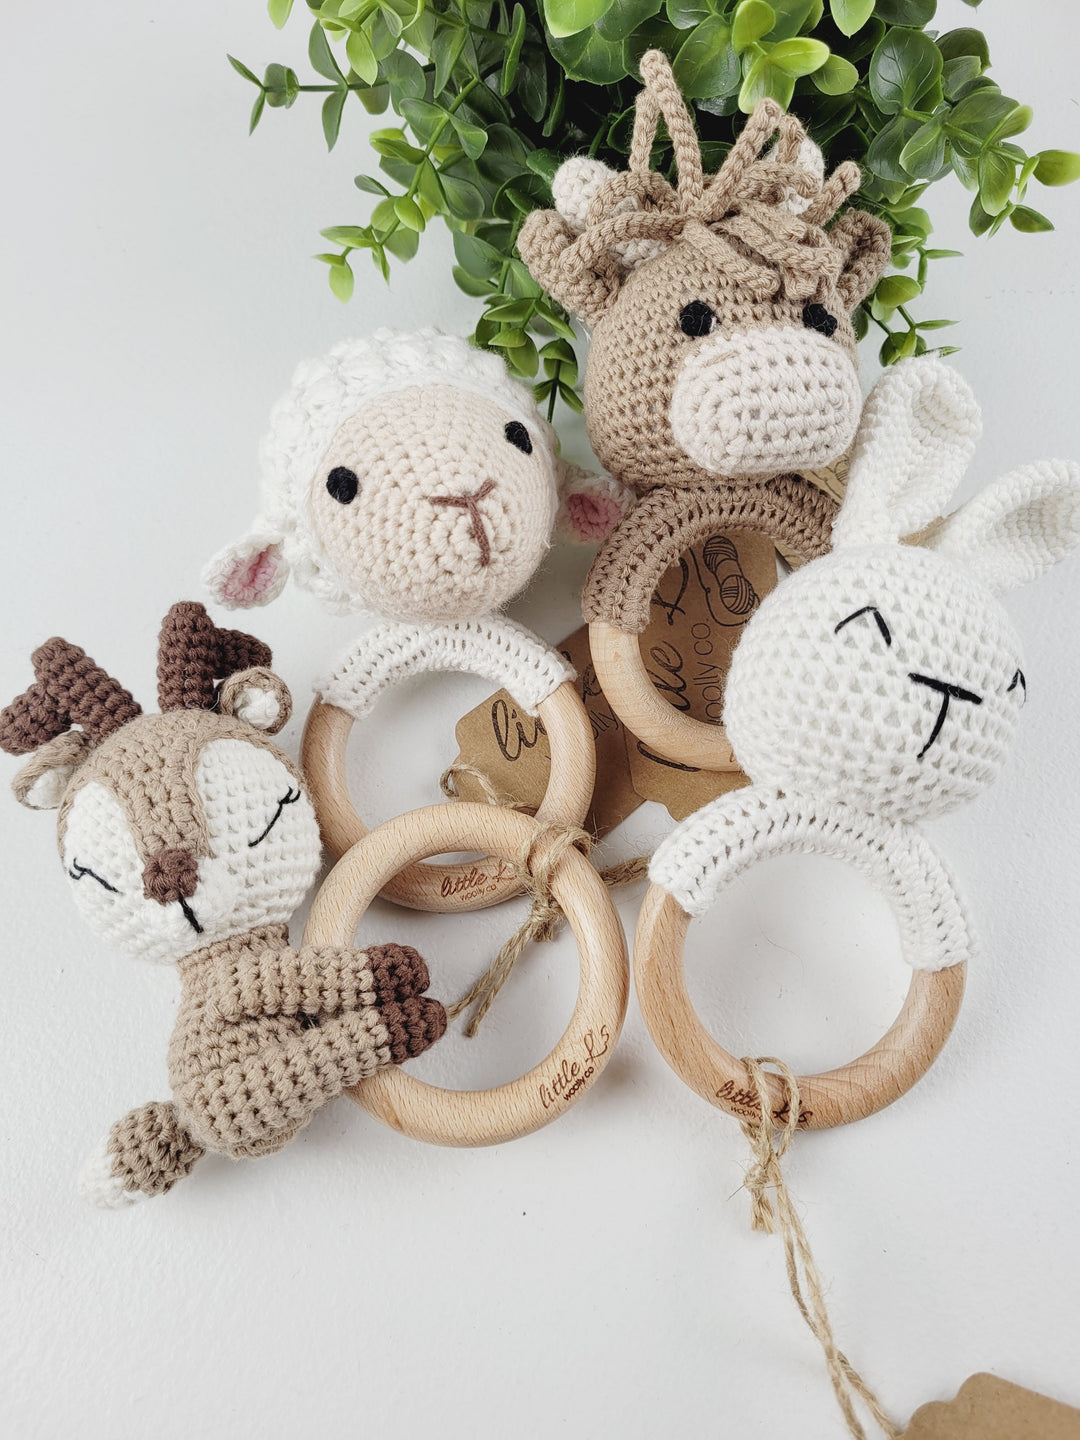 Little L's Woolly Co. Crochet & Wooden Rattles